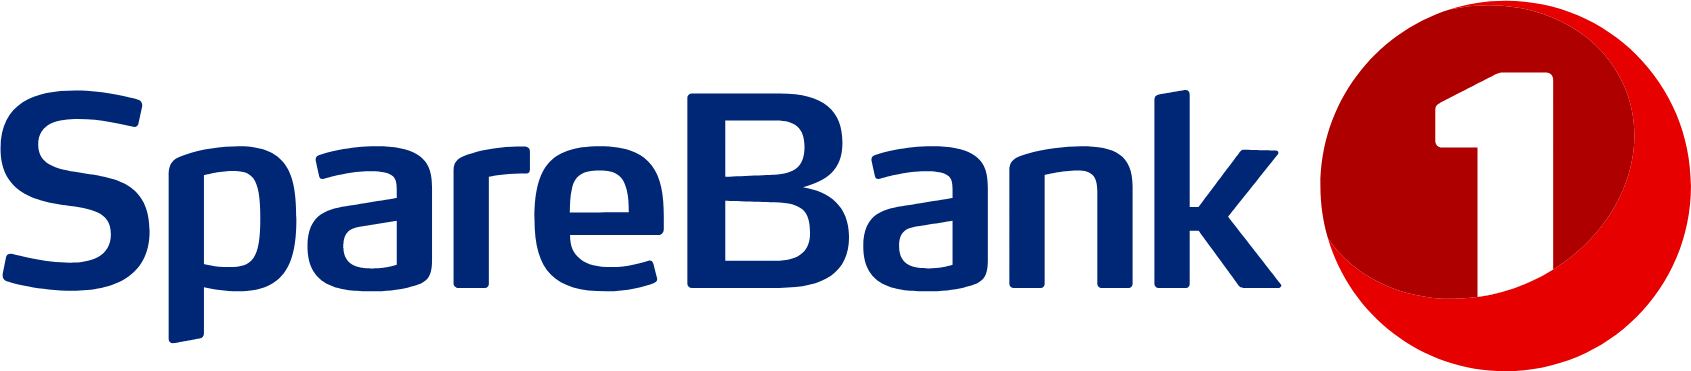 SpareBank 1 logo large (transparent PNG)